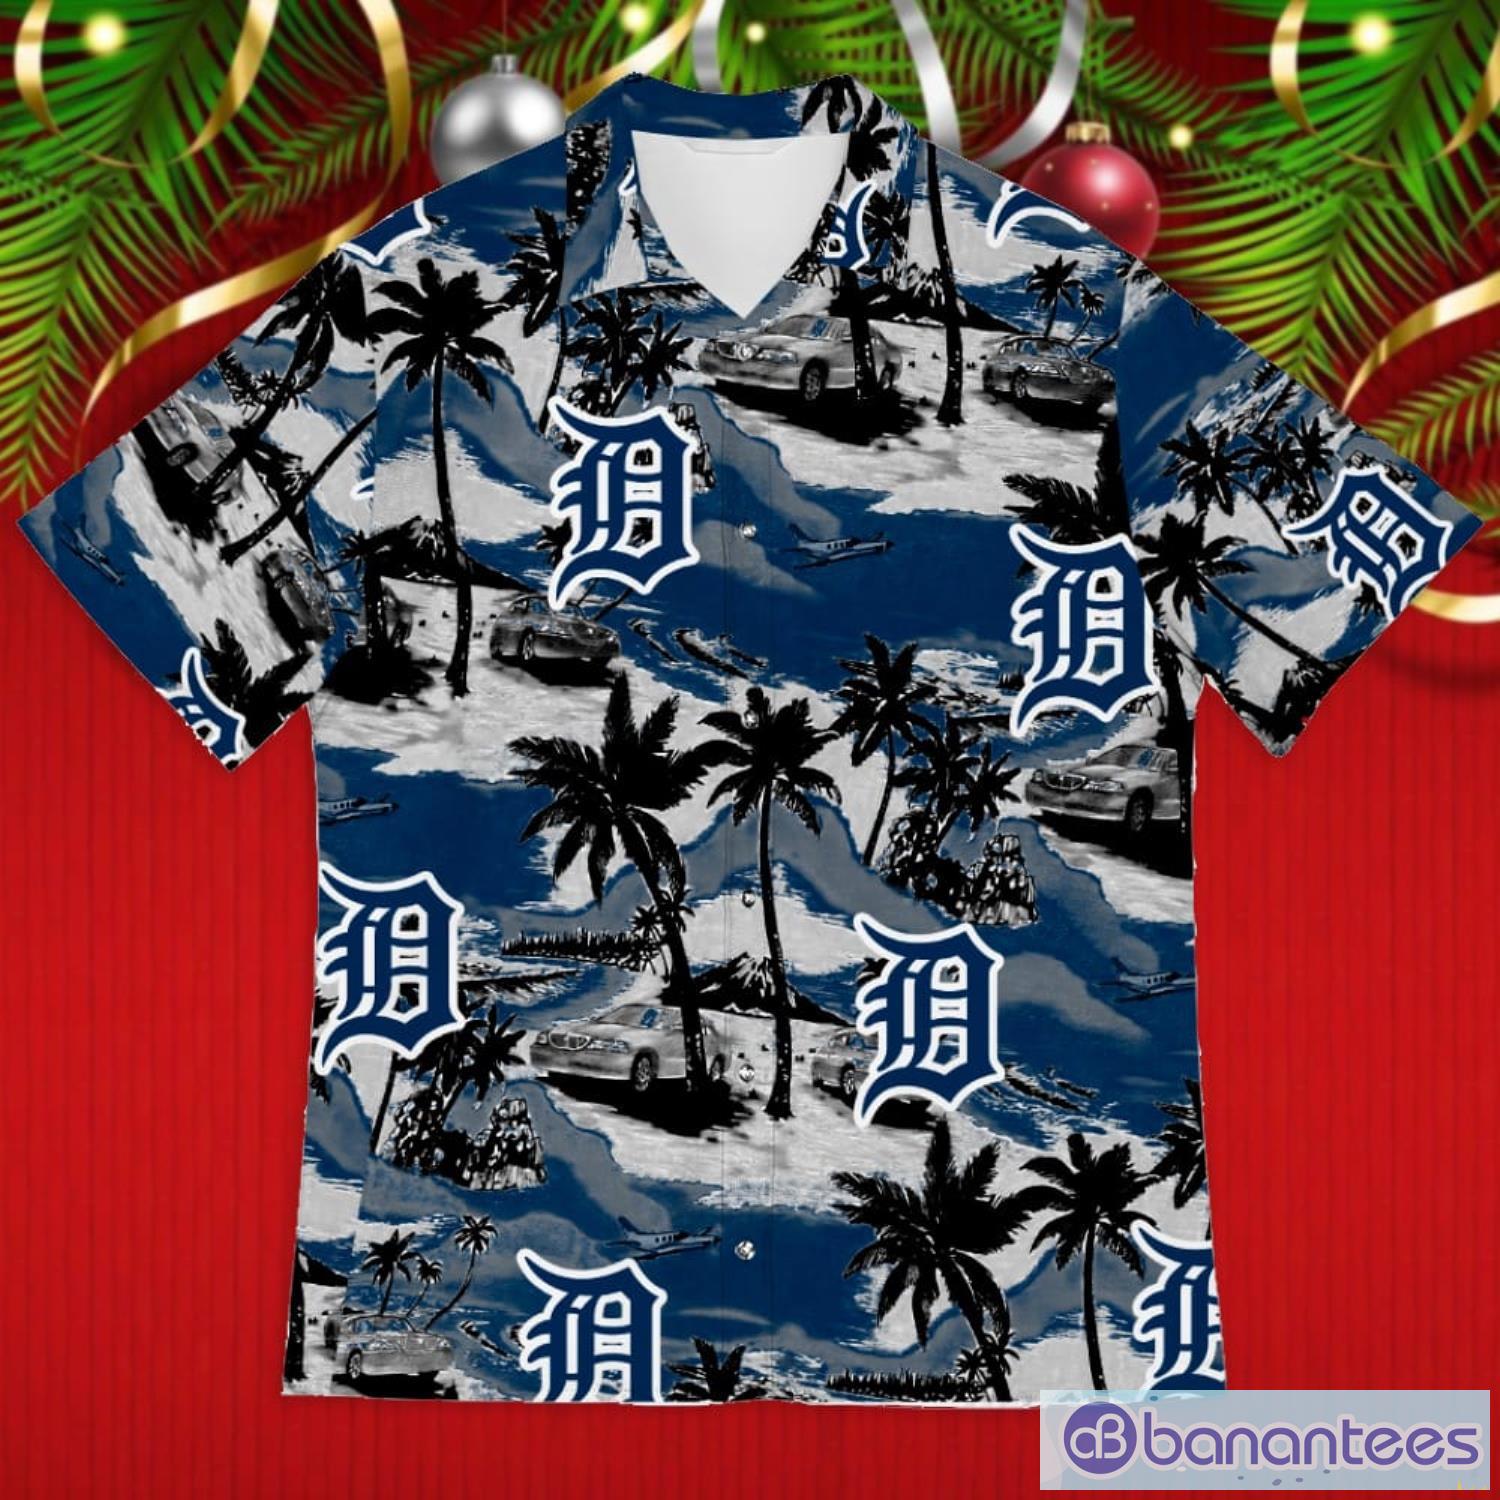 Los Angeles Dodgers Hawaiian Shirt And Shorts Best Gift For Summer Vacation  - Banantees